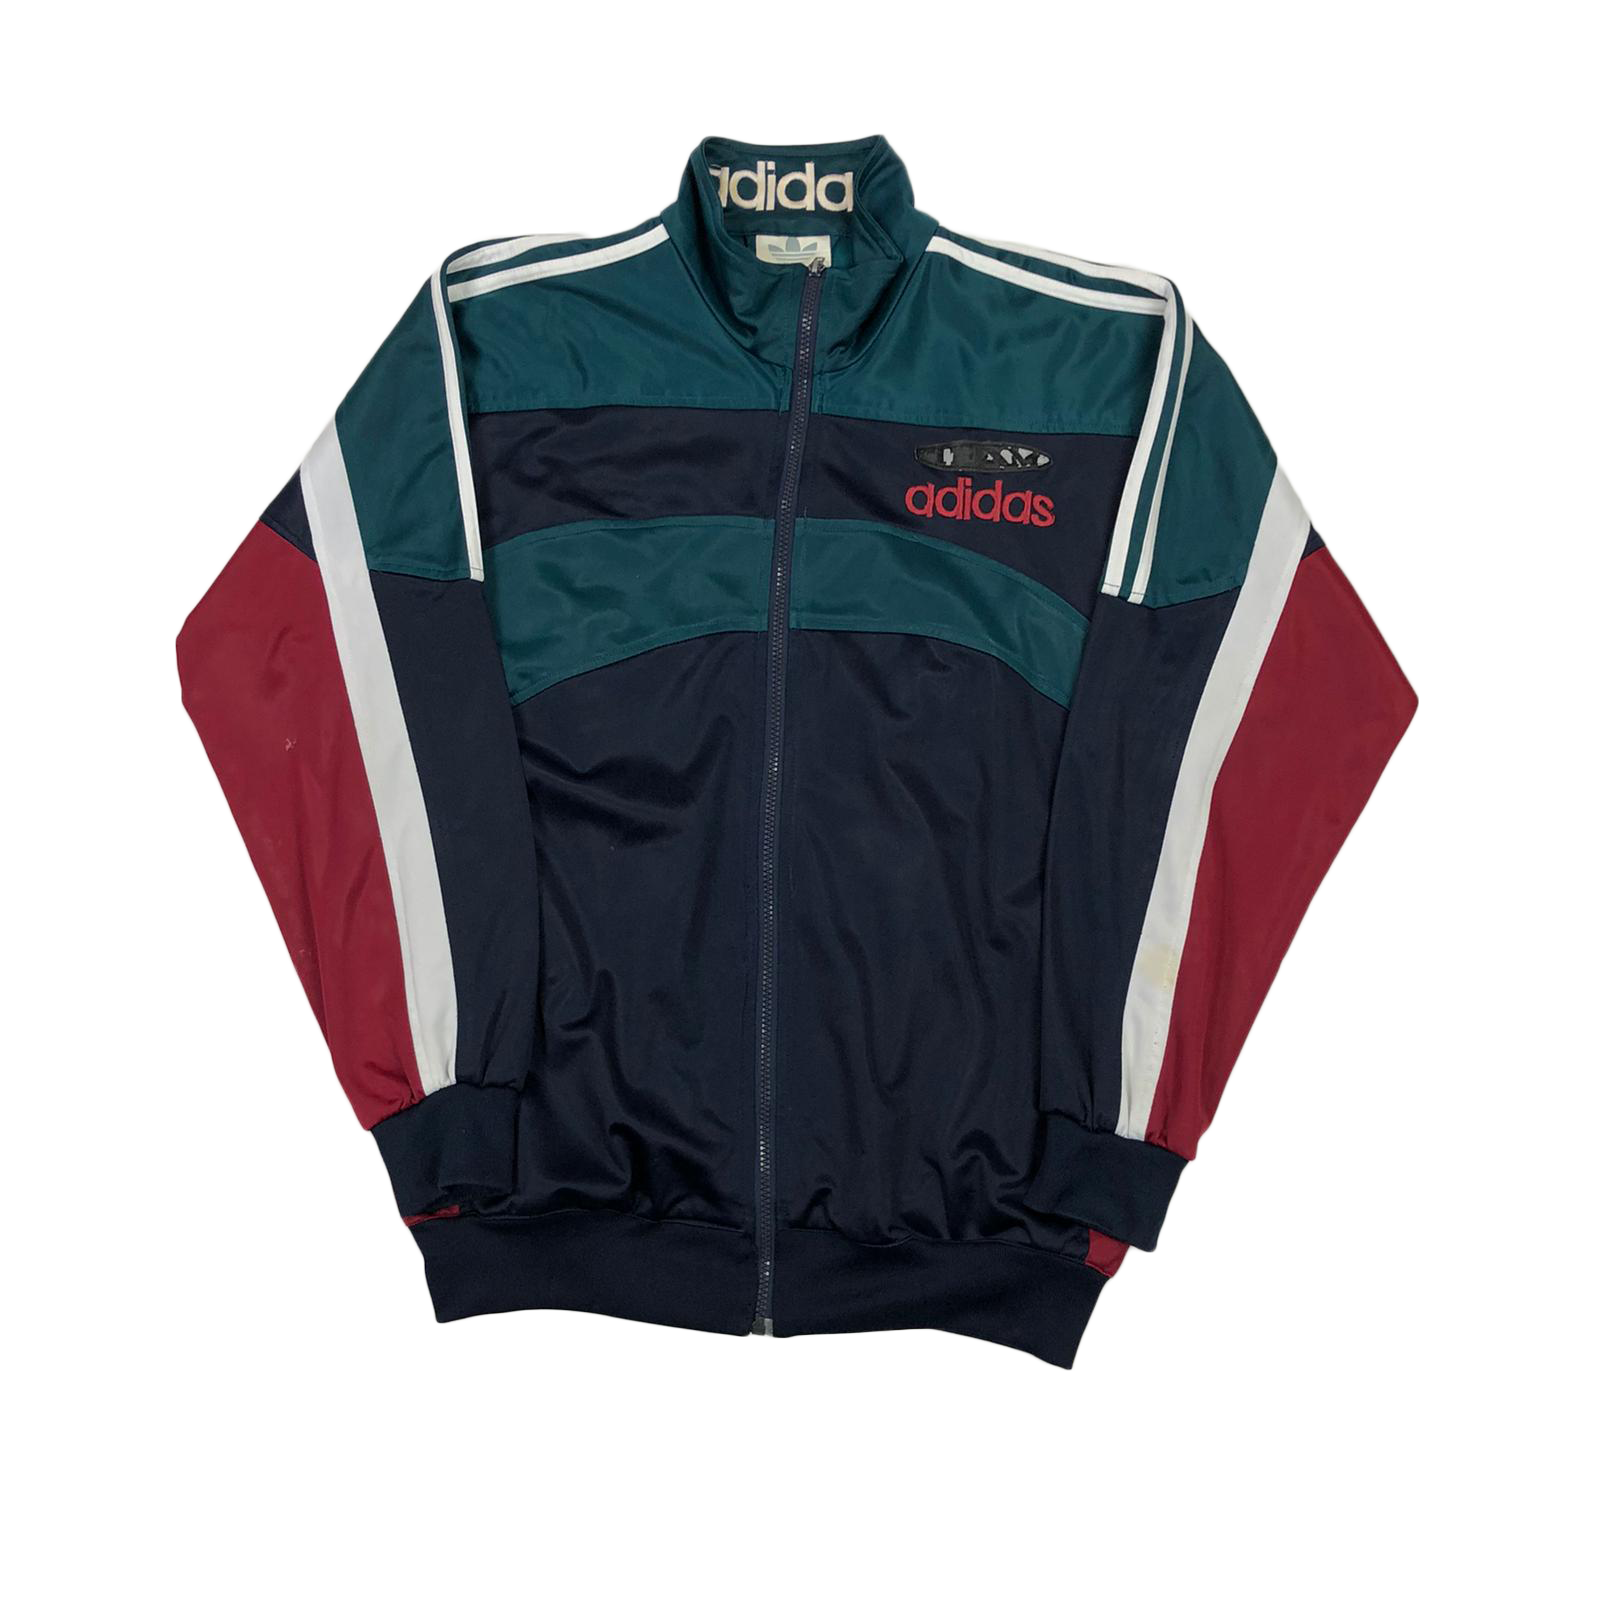 adidas 90's jacket